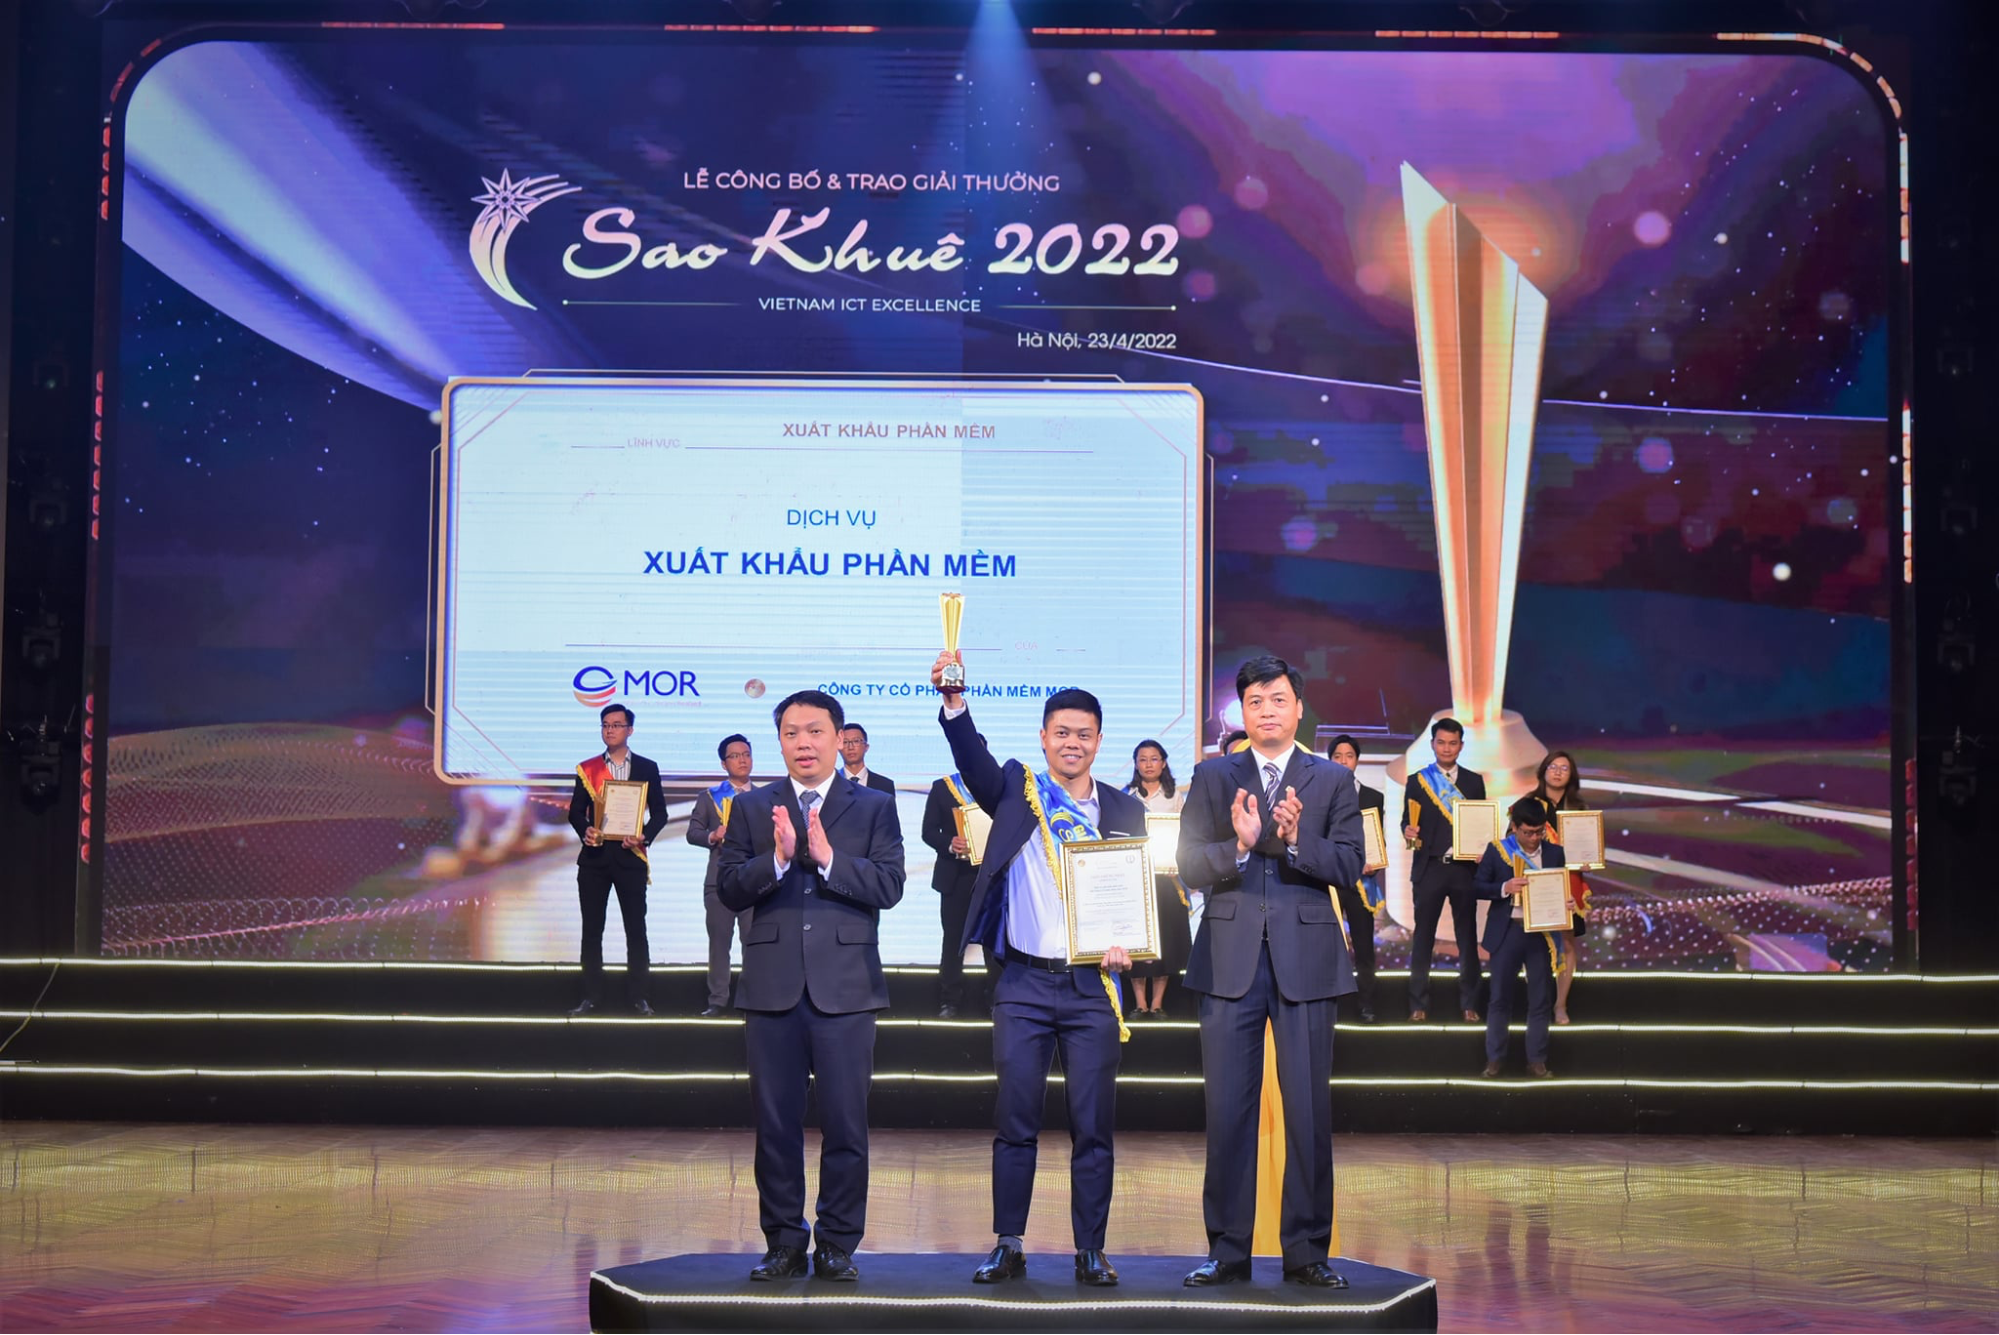 MOR Software vinh dự nhận giải thưởng Sao Khuê 2022 ở hạng mục Xuất khẩu phần mềm.